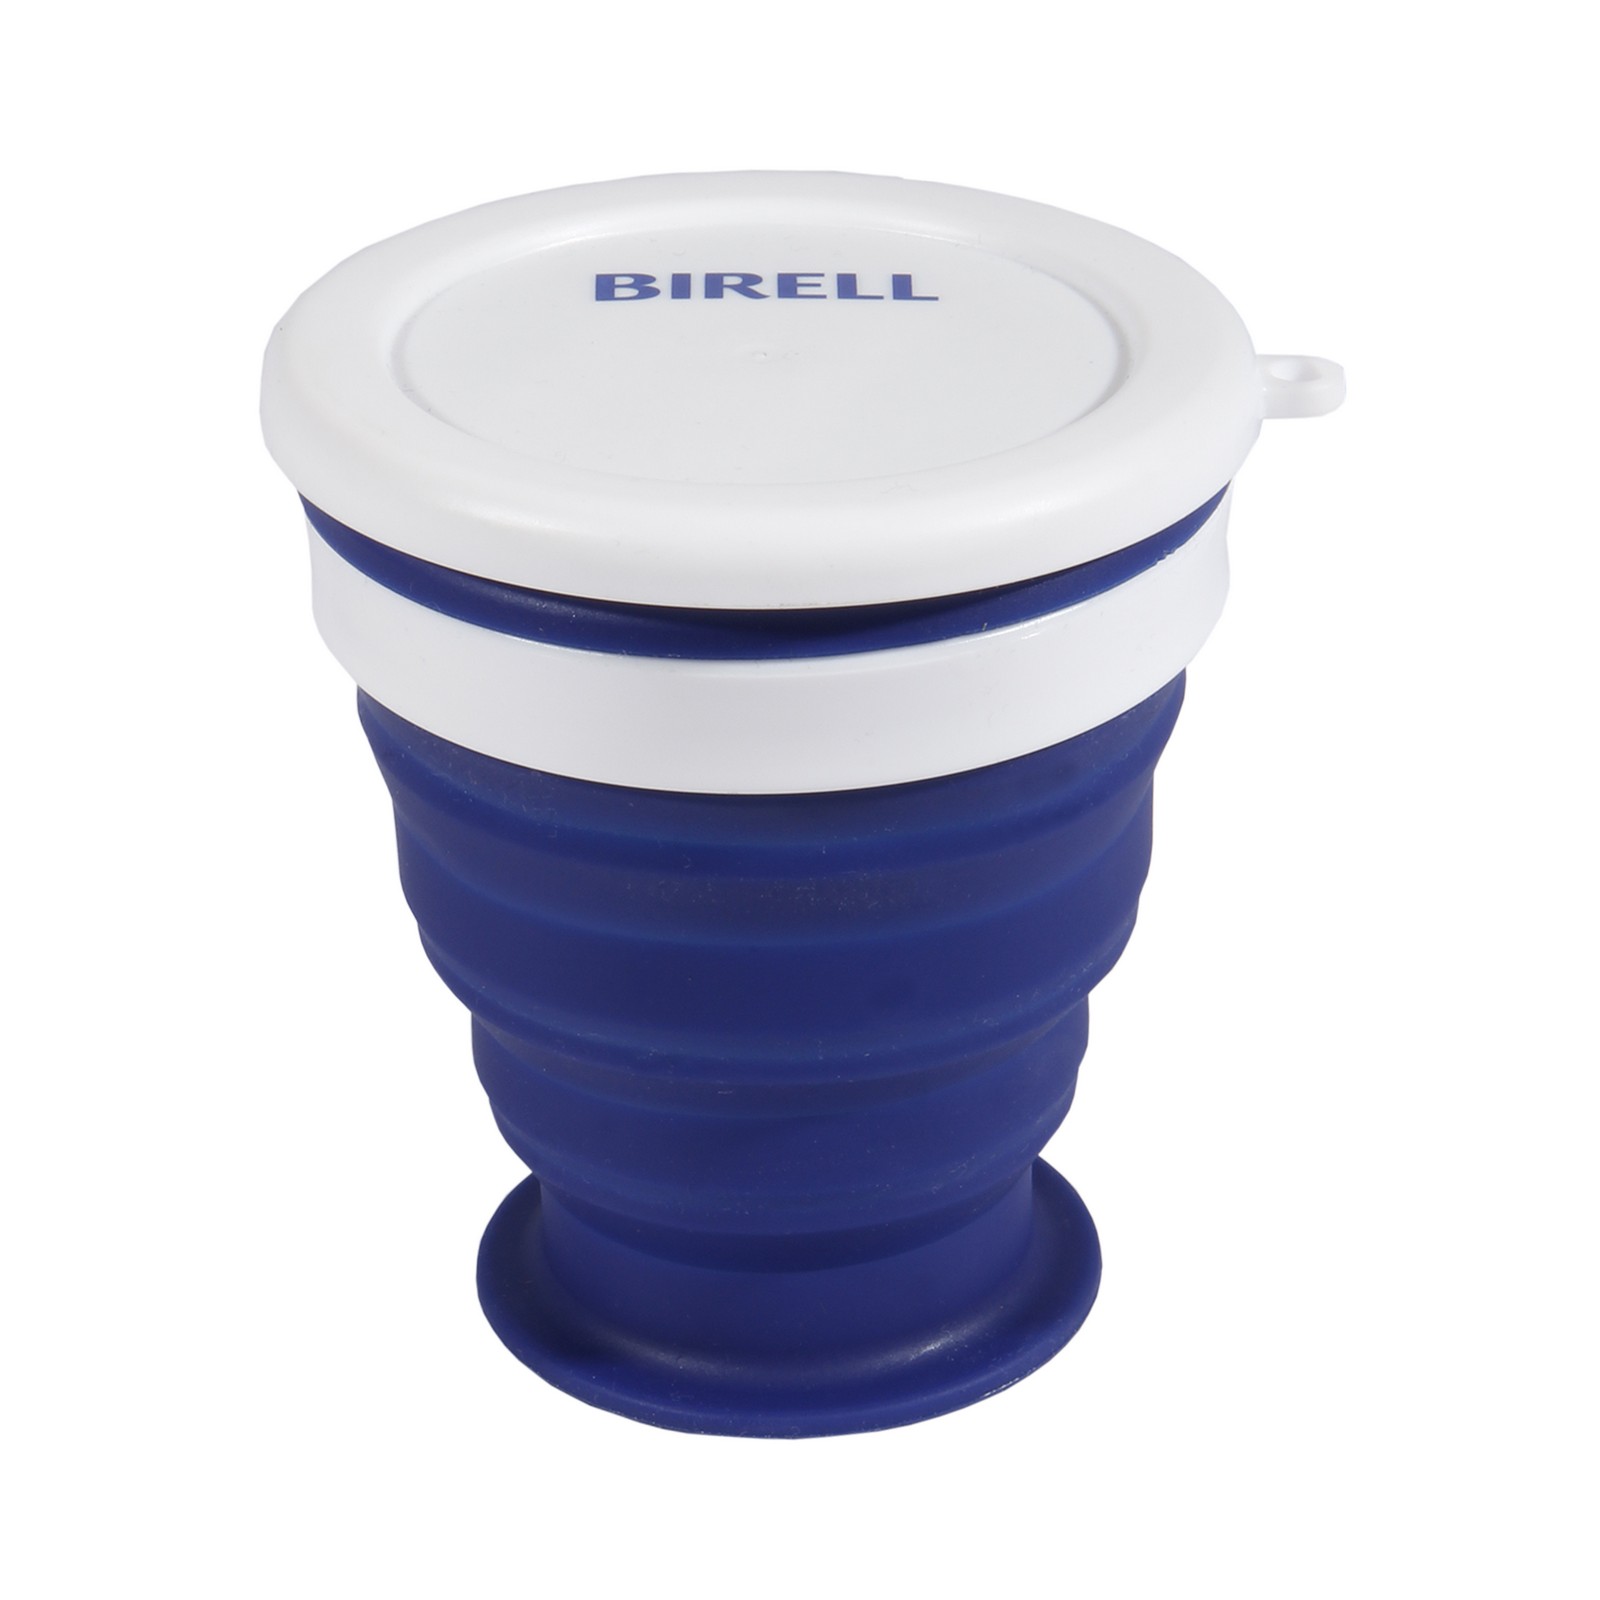 Birell folding cup